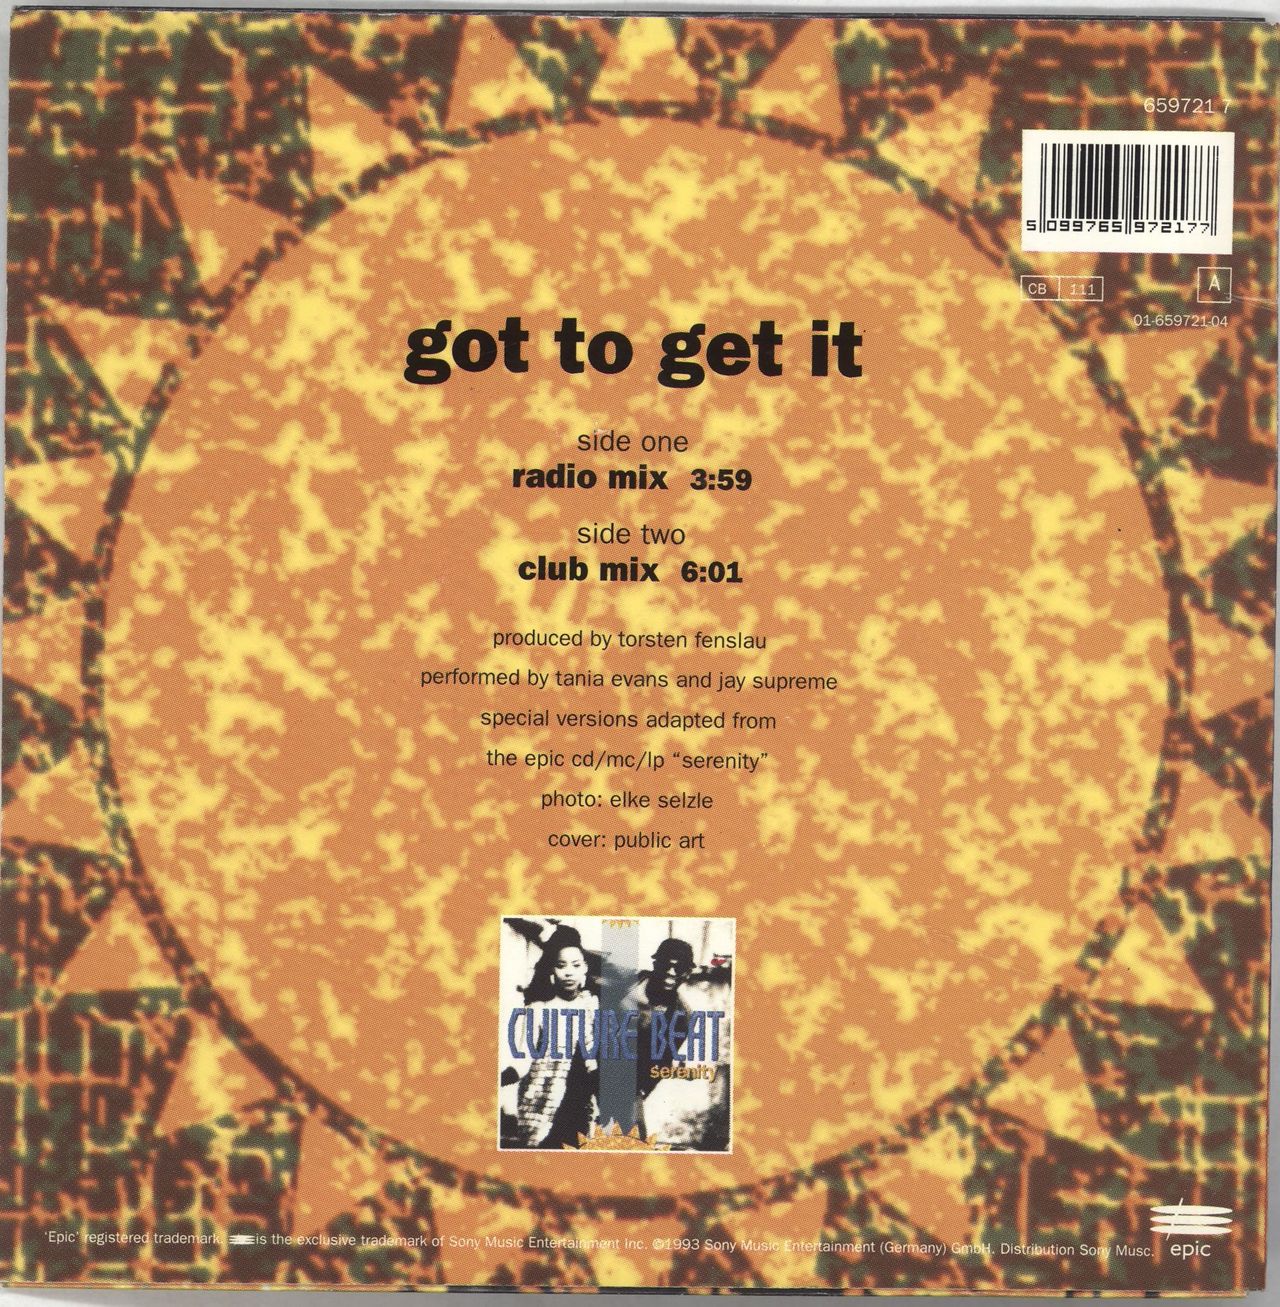 Beat Got It Dutch vinyl — RareVinyl.com